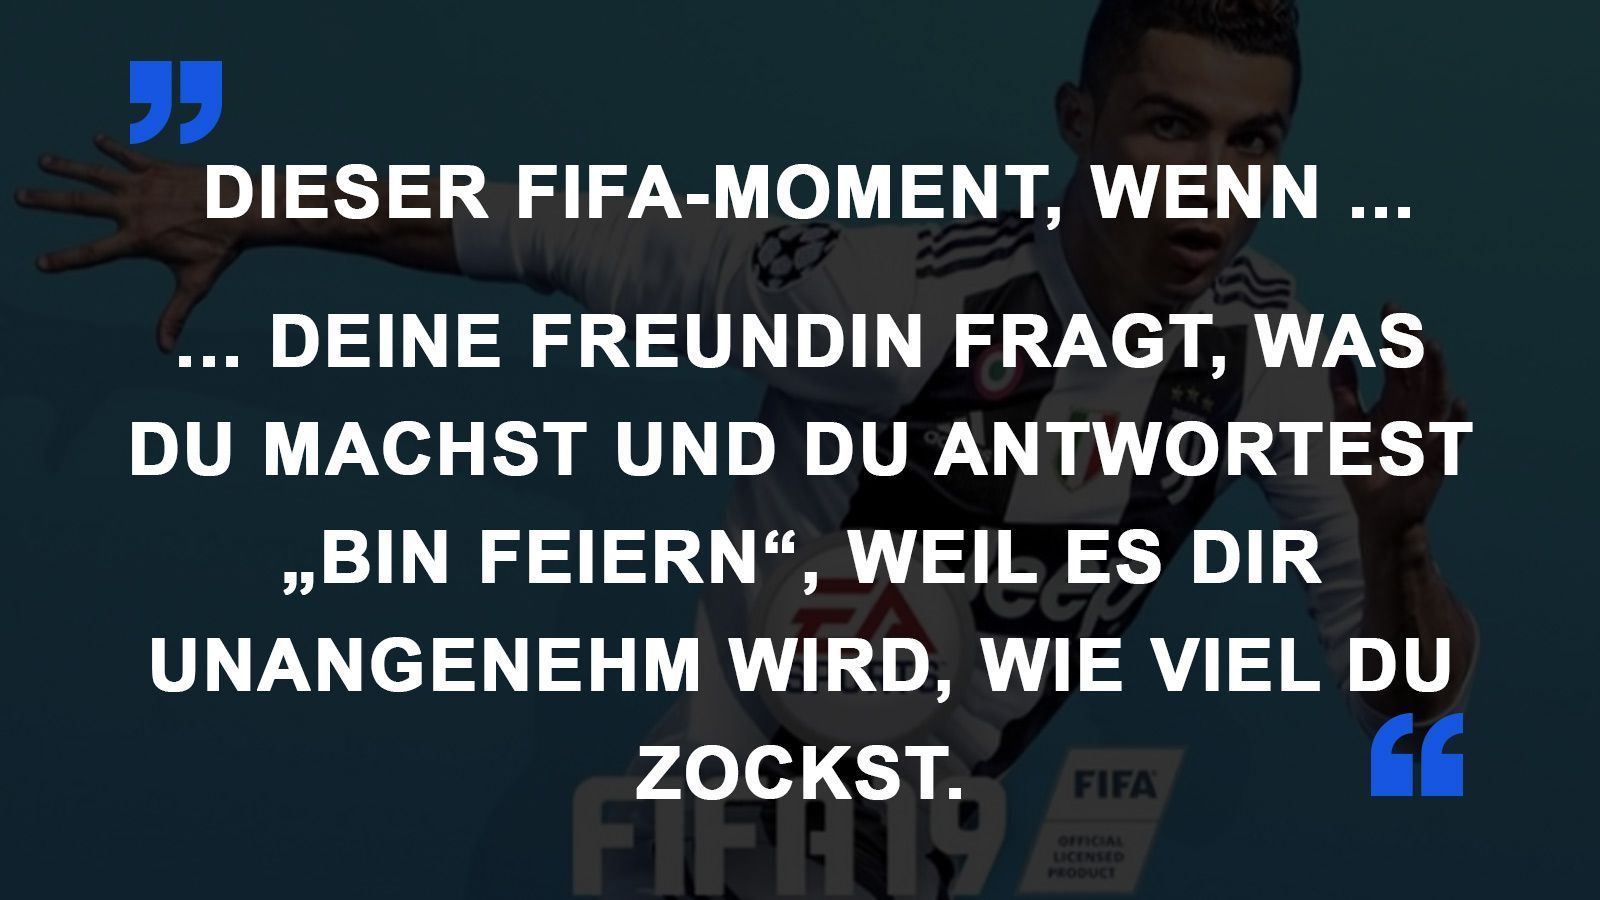 
                <strong>FIFA Momente Freundin</strong><br>
                
              